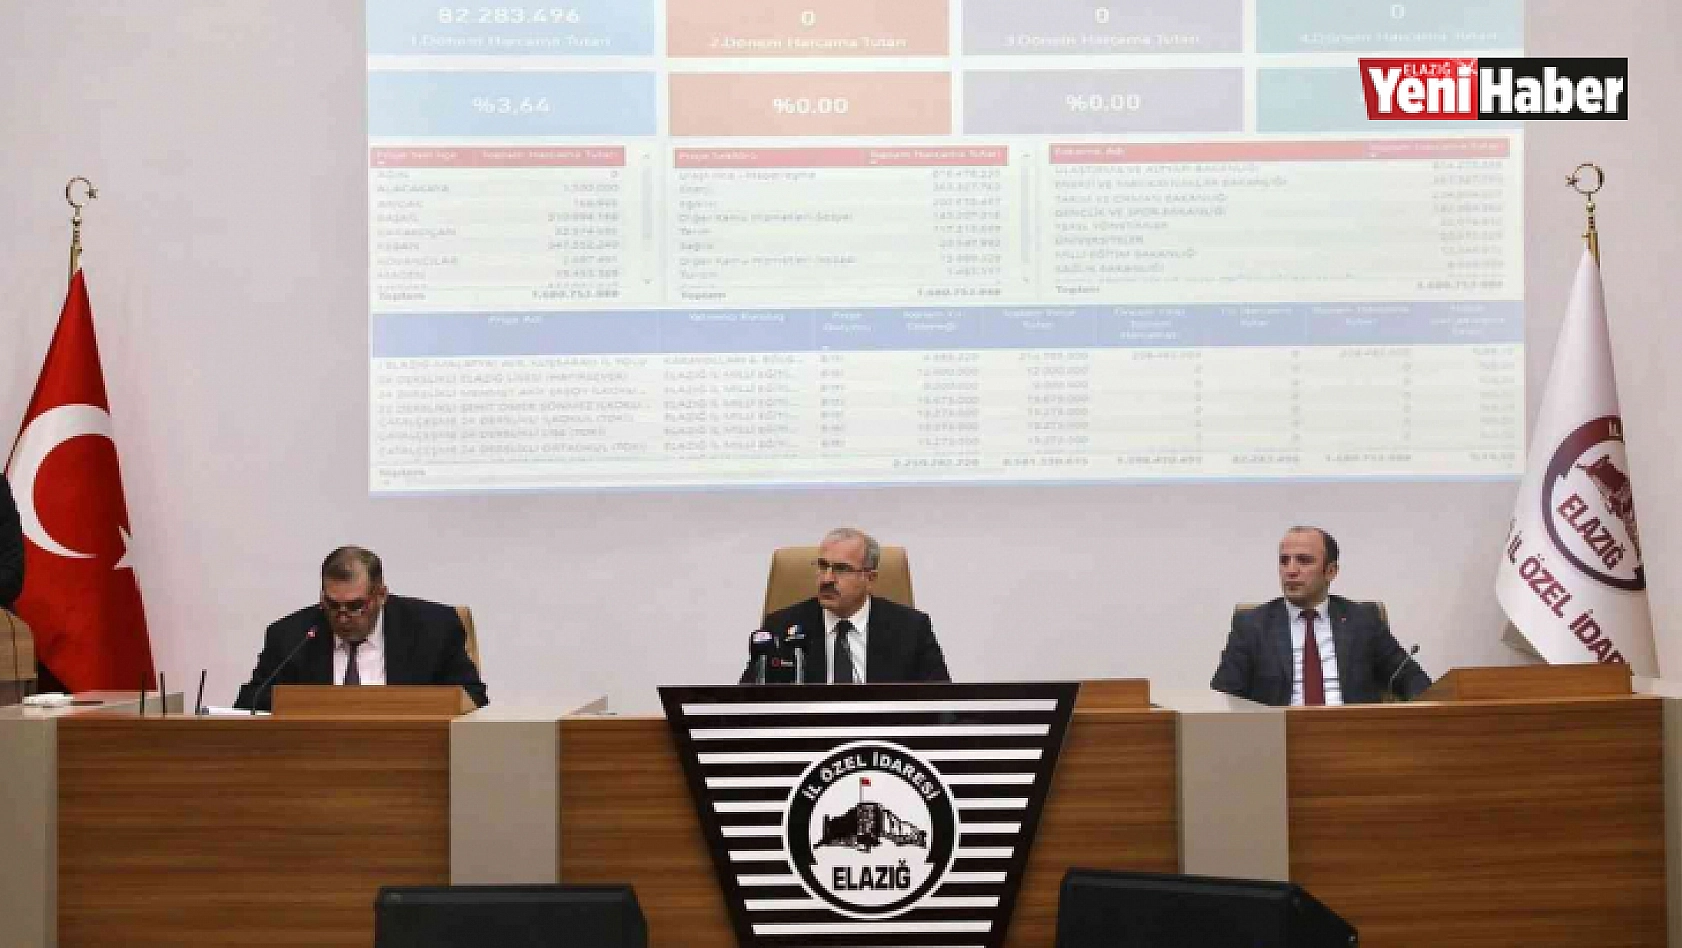 Elazığ'da il koordinasyon kurulu toplantısı gerçekleştirildi